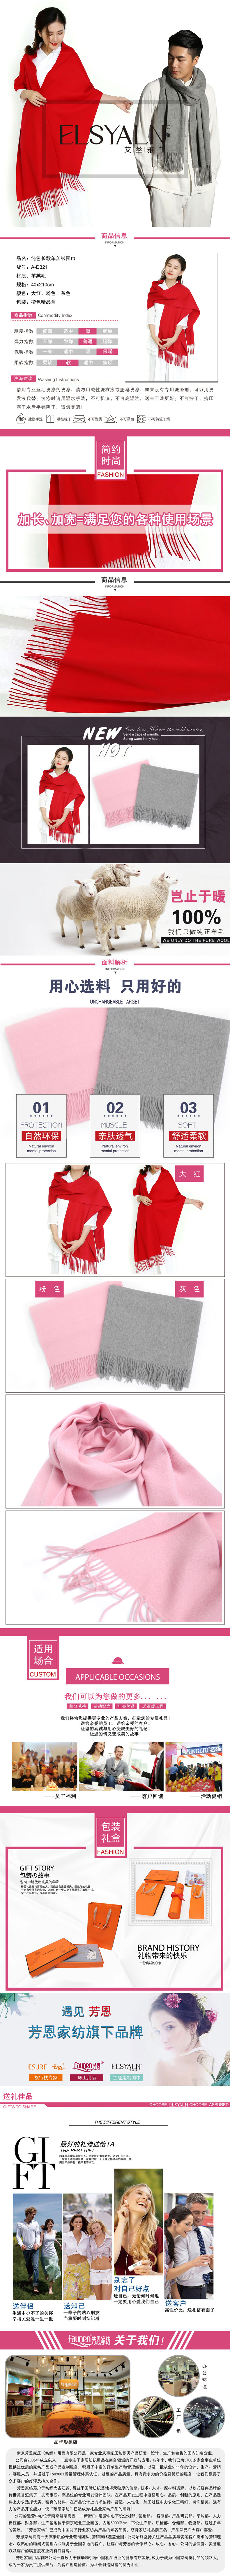 女式羊绒围巾,男士羊绒围巾,羊毛围巾